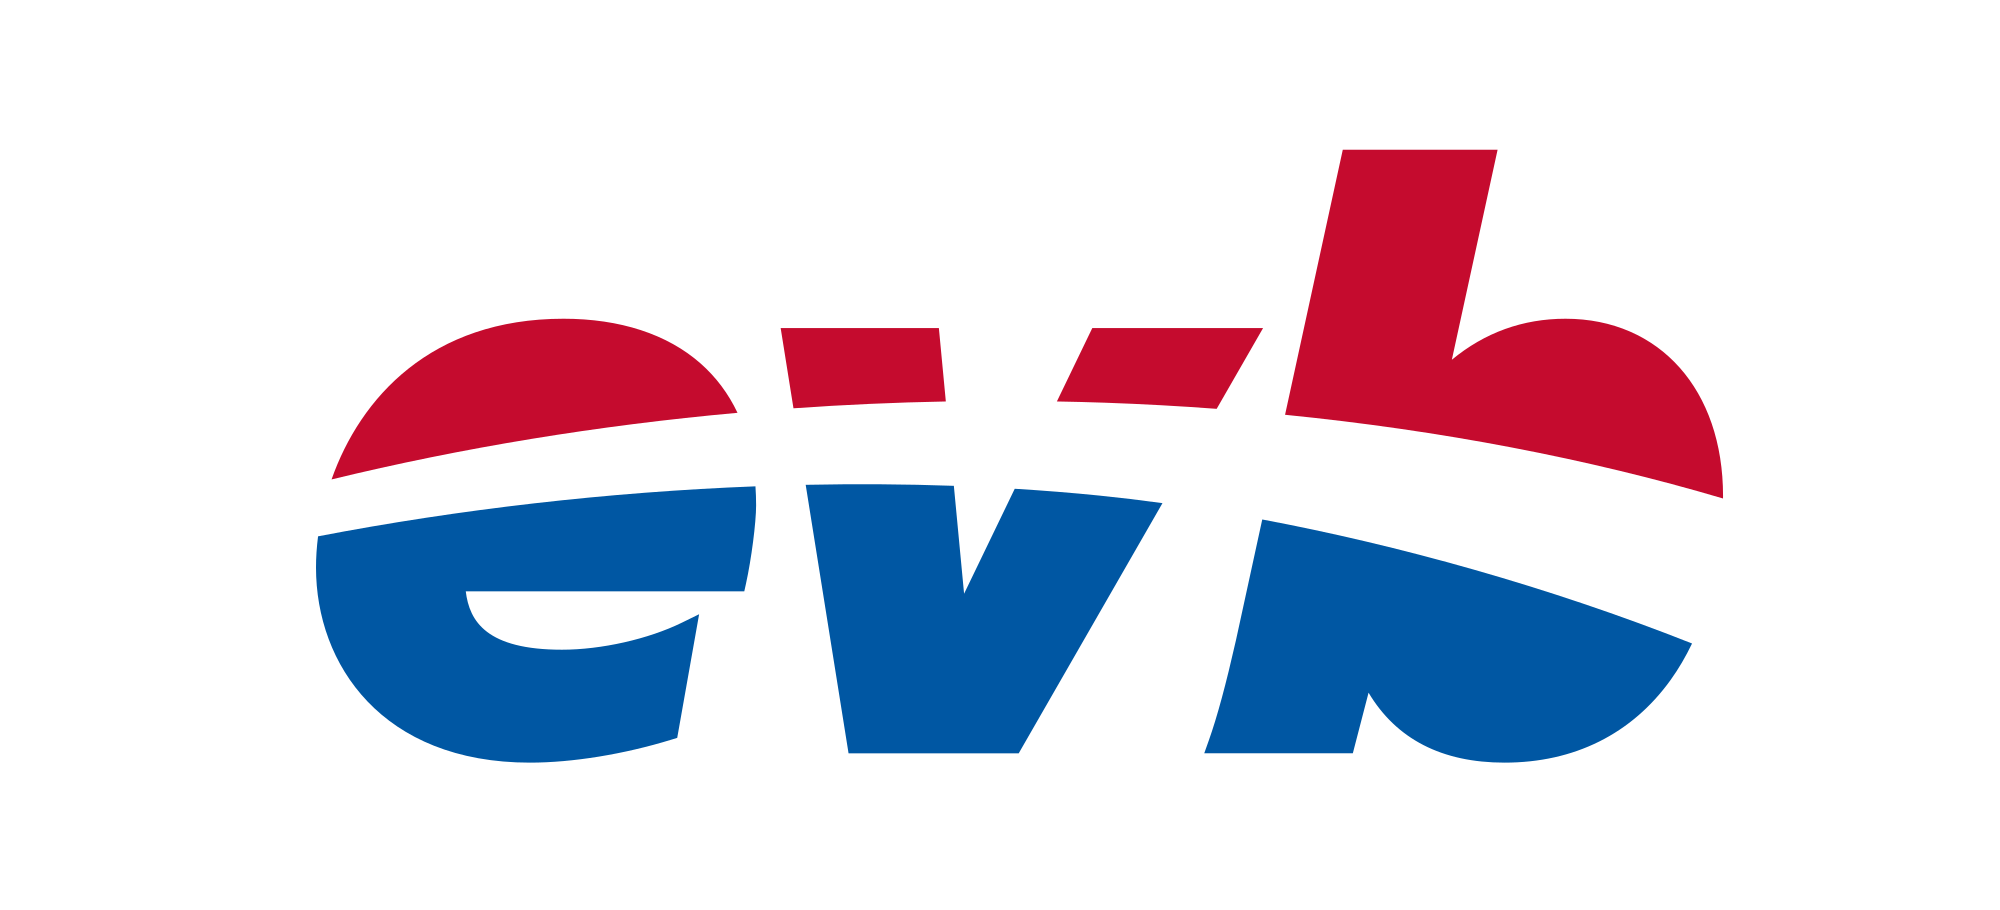 evb | Eisenbahnen und Verkehrsbetriebe Elbe-Weser GmbH